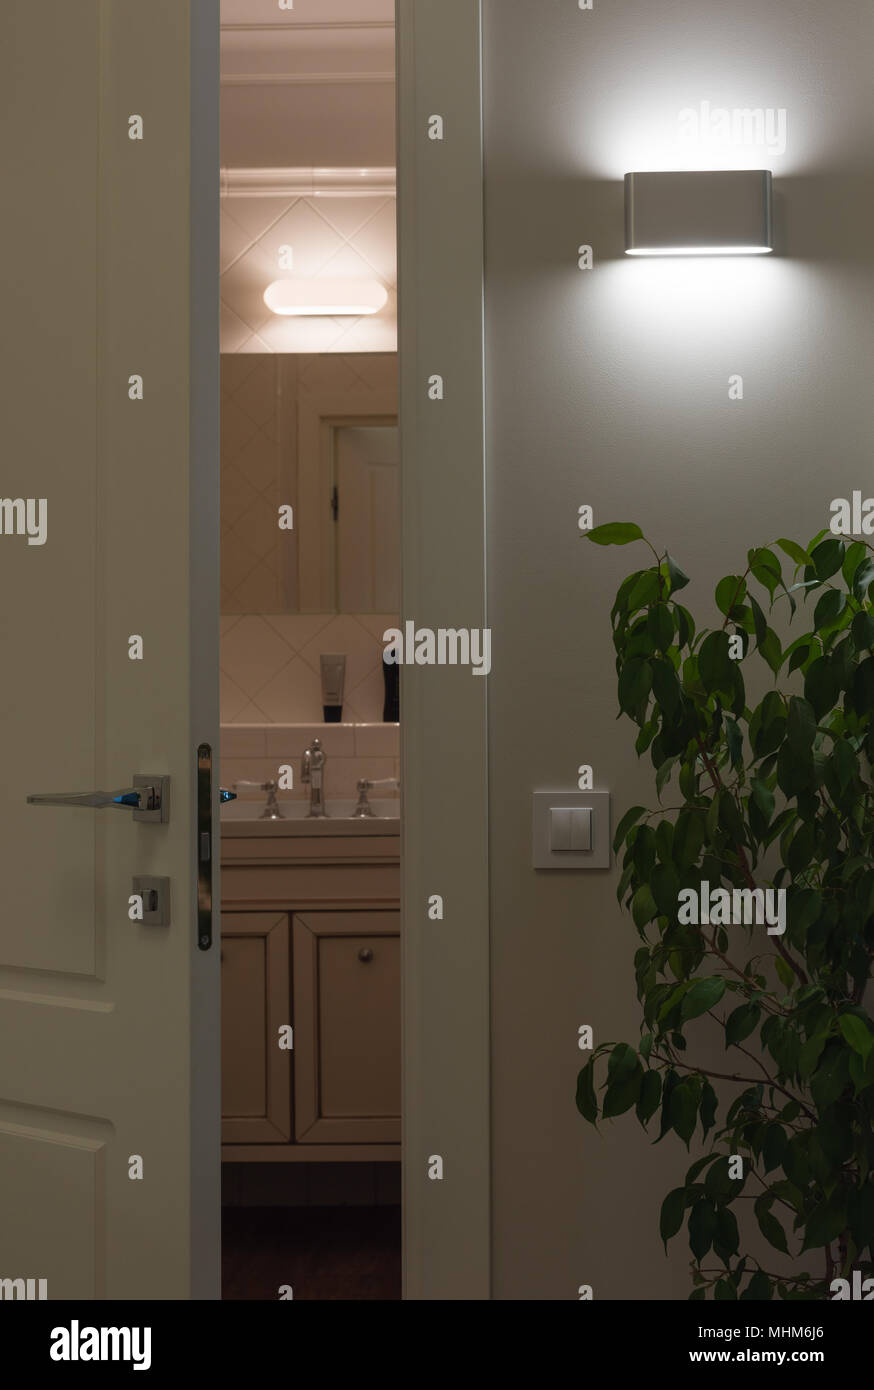 Wand LED-Lampen im Innenraum. Weiße Tür zum Bad zu öffnen. Vergleich von  Led- und Halogen Licht Stockfotografie - Alamy